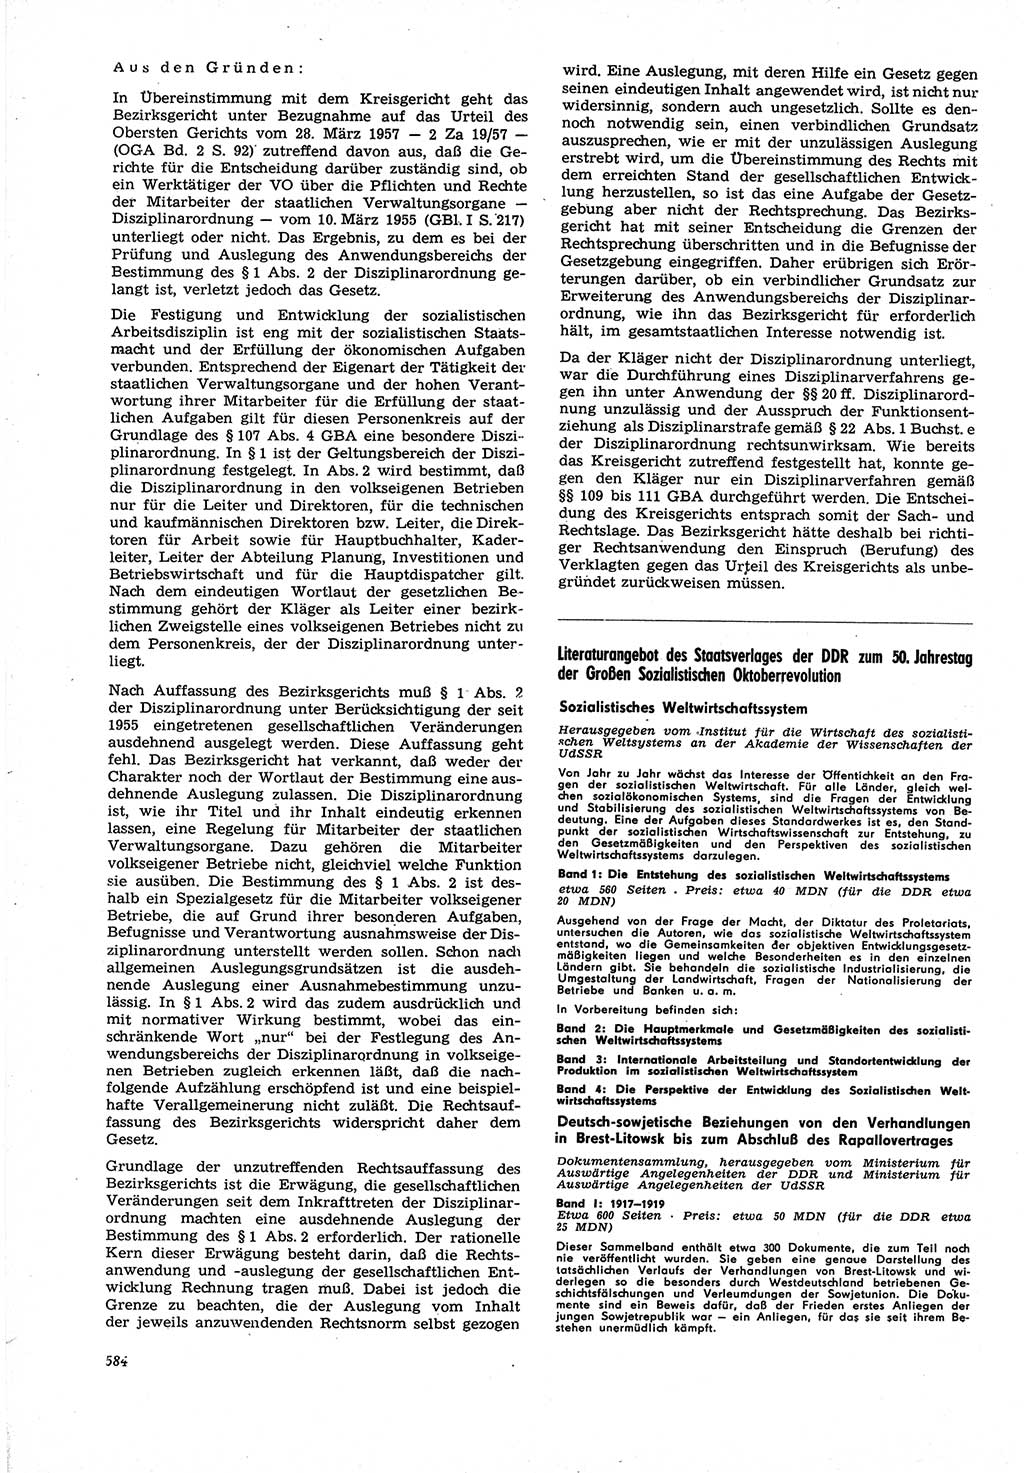 Neue Justiz (NJ), Zeitschrift für Recht und Rechtswissenschaft [Deutsche Demokratische Republik (DDR)], 21. Jahrgang 1967, Seite 584 (NJ DDR 1967, S. 584)